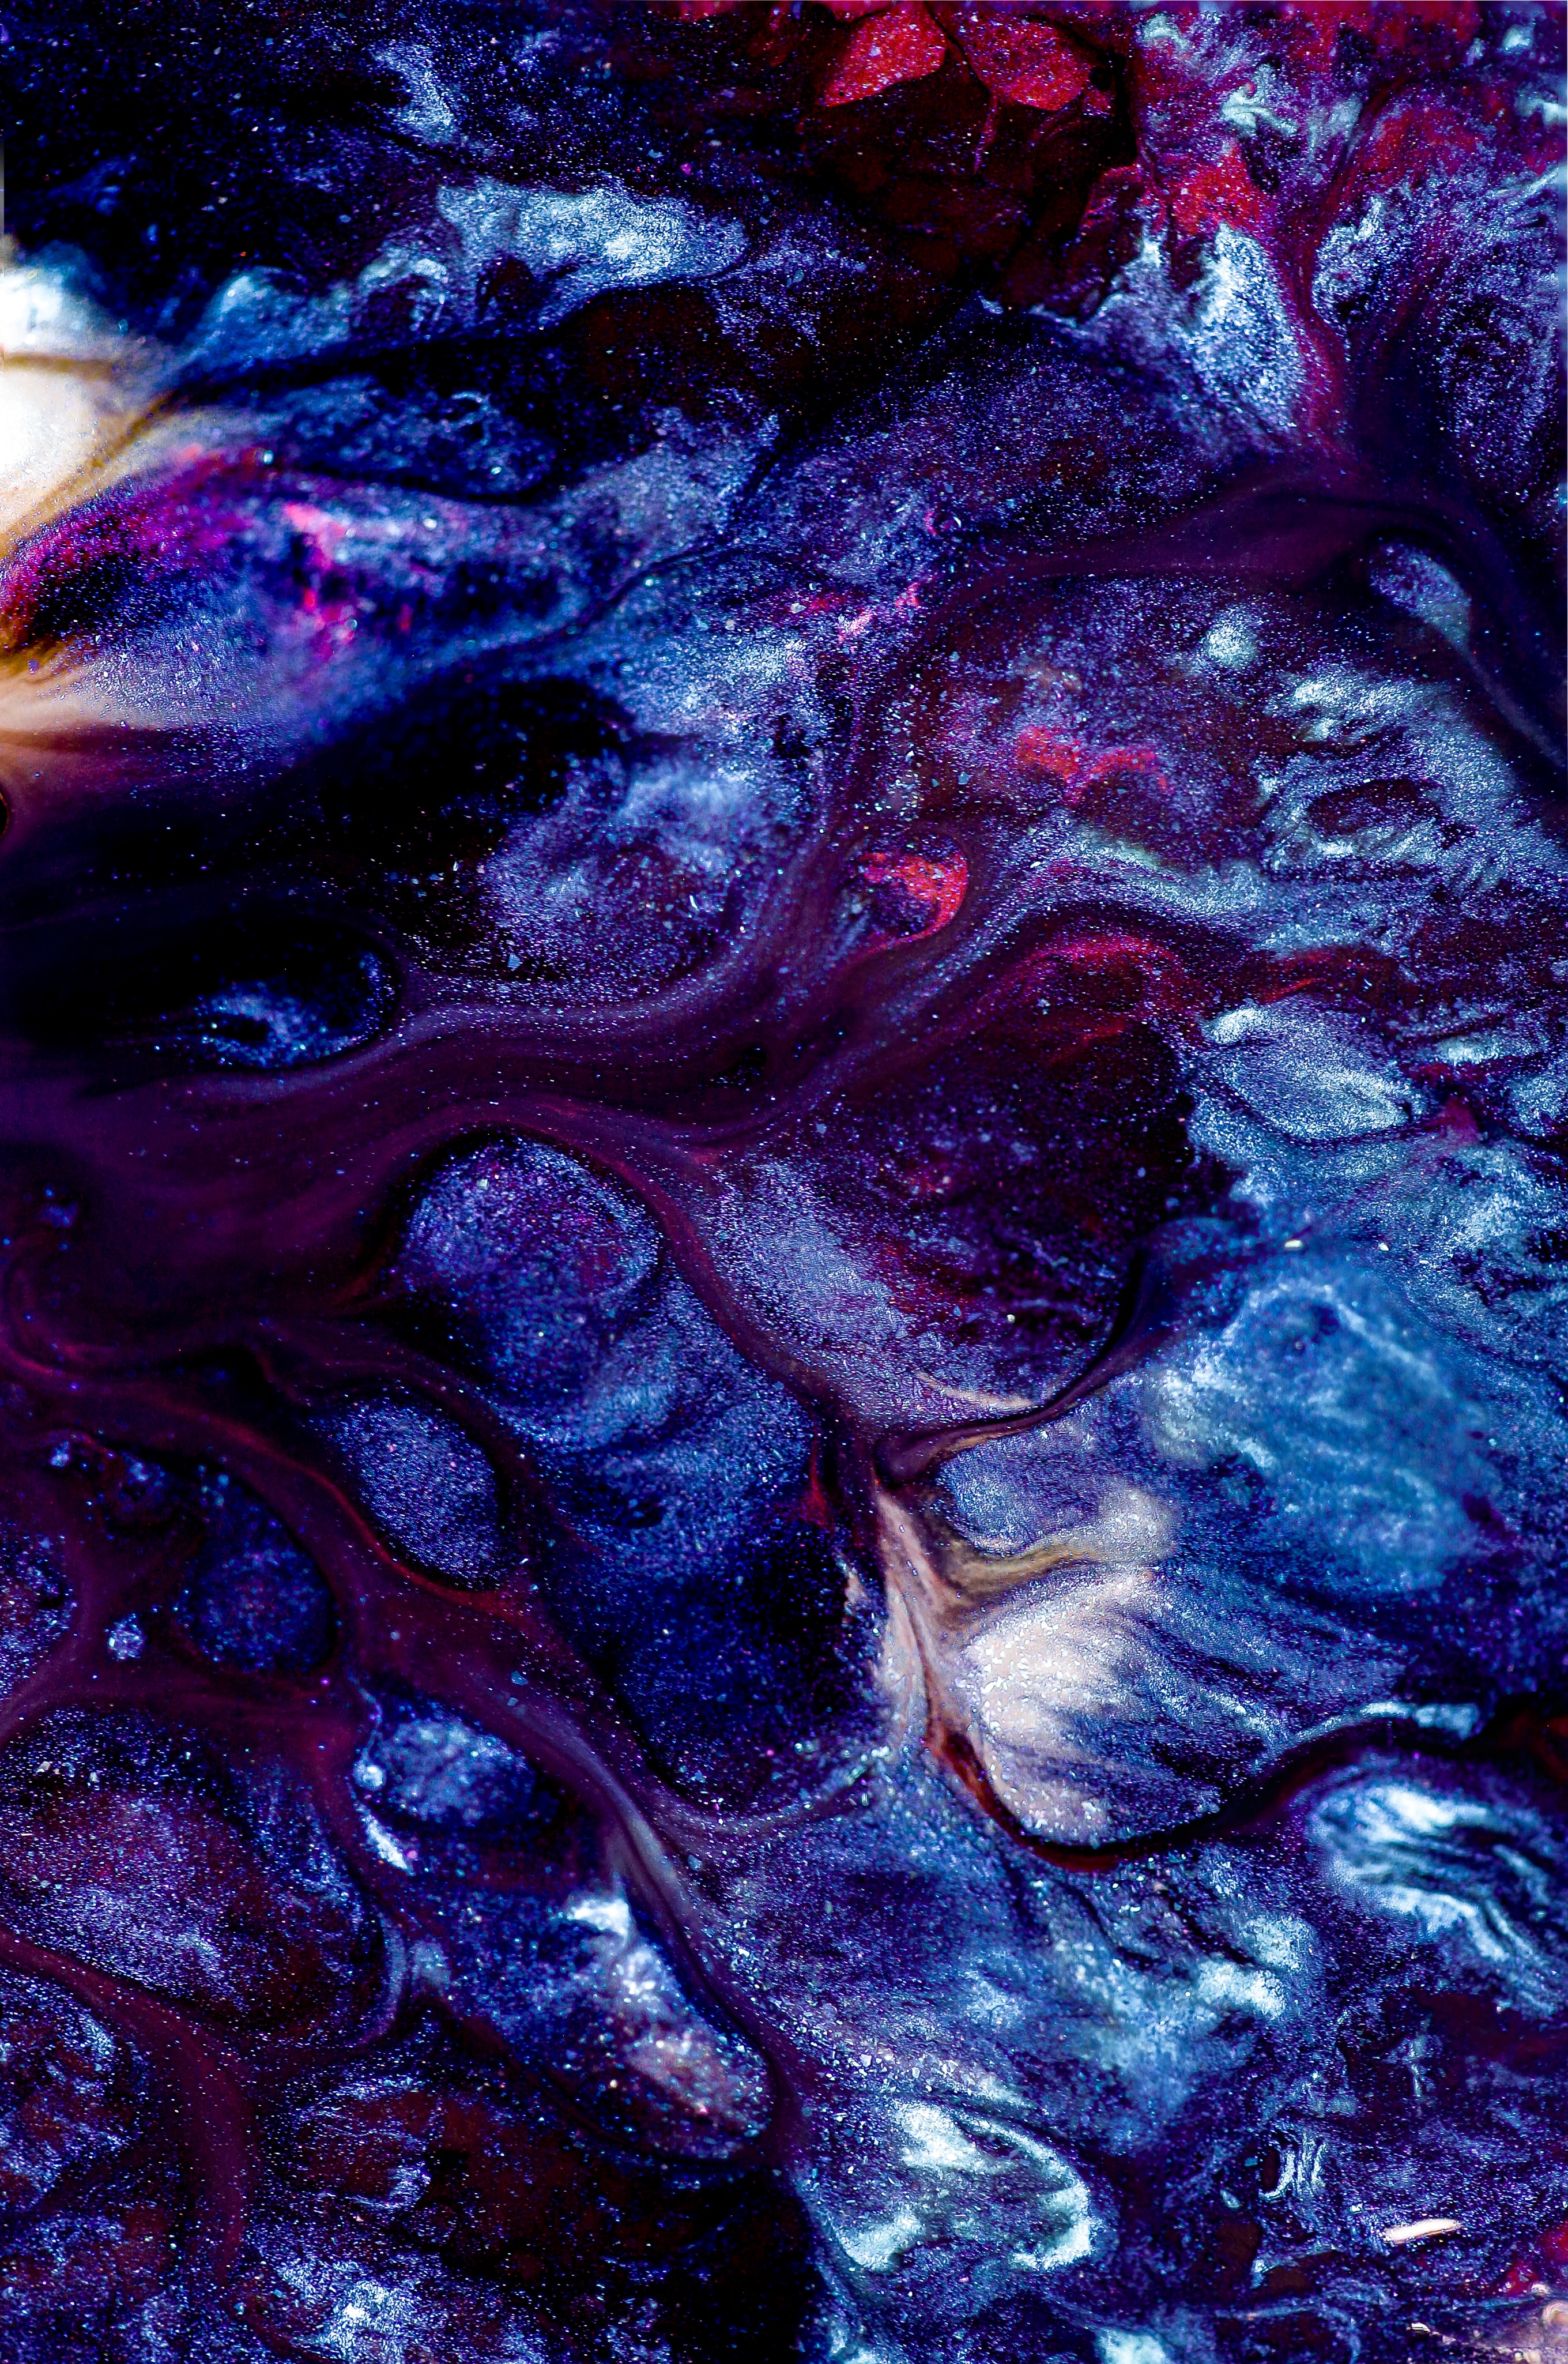 Intuition – Violett und blau glitzernde Farbe, die ineinander fließt